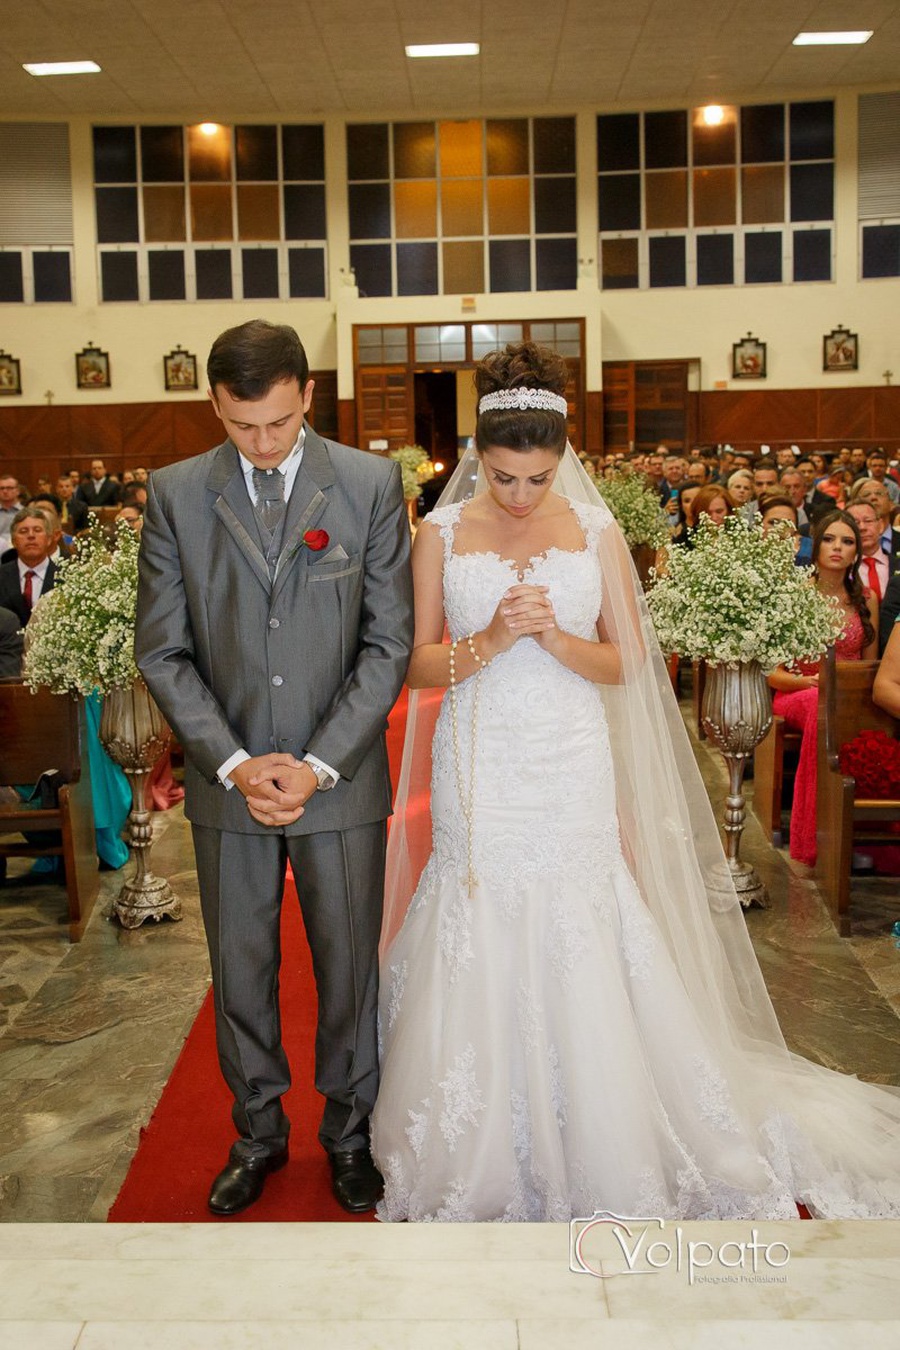 Casamento | Kamilla & André 